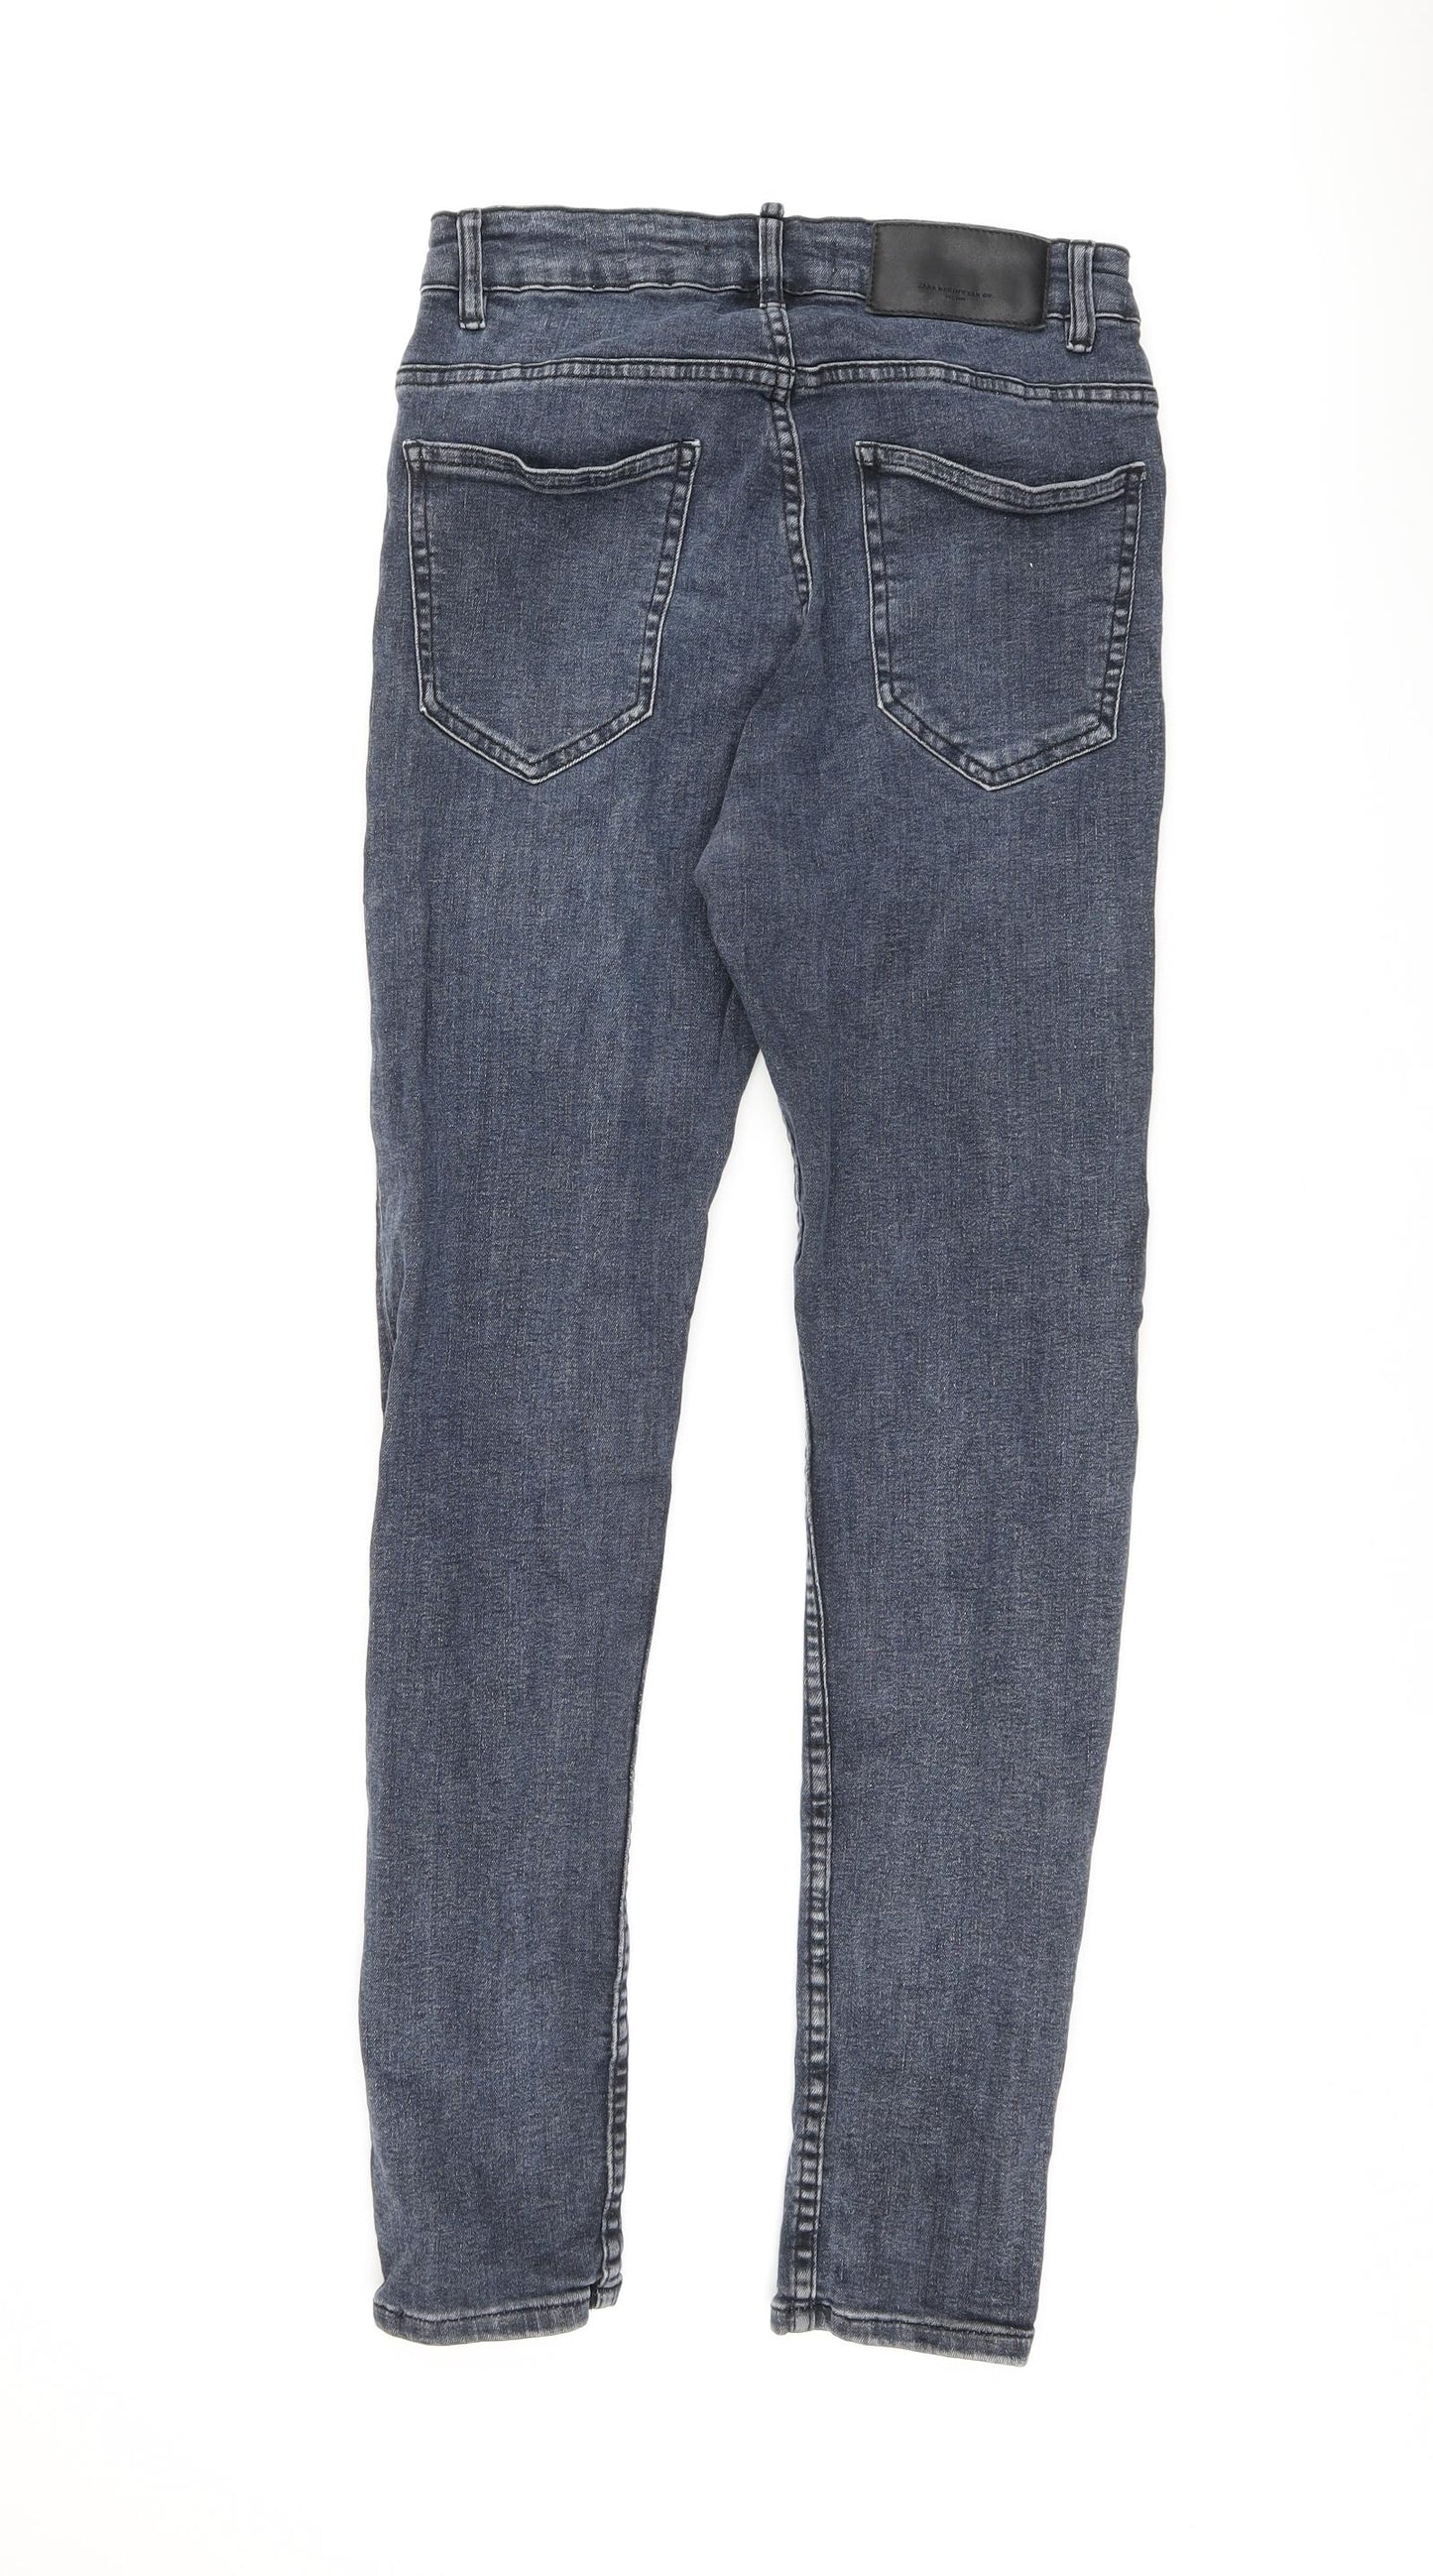 Zara Womens Blue Cotton Skinny Jeans Size 8 L28 in Regular Zip